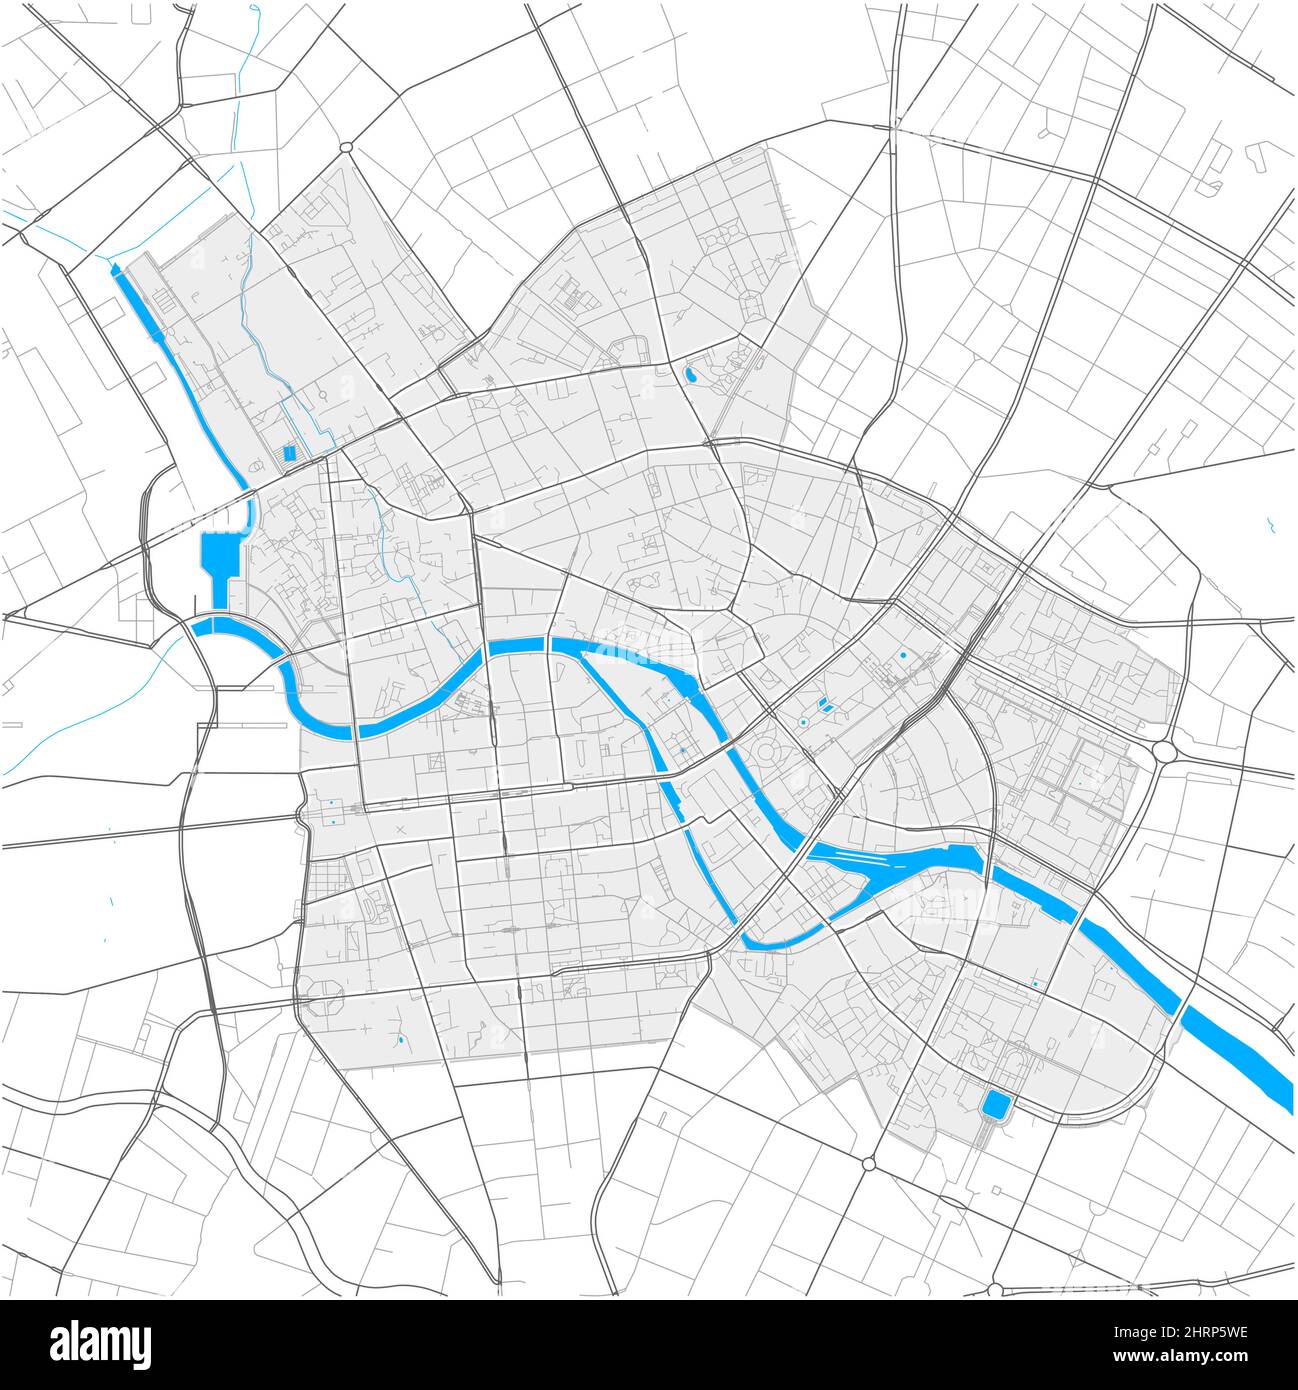 Mitte, Berlino, GERMANIA, mappa vettoriale ad alto dettaglio con confini della città e percorsi modificabili. Contorni bianchi per le strade principali. Molti percorsi più piccoli. Blu cenere Illustrazione Vettoriale